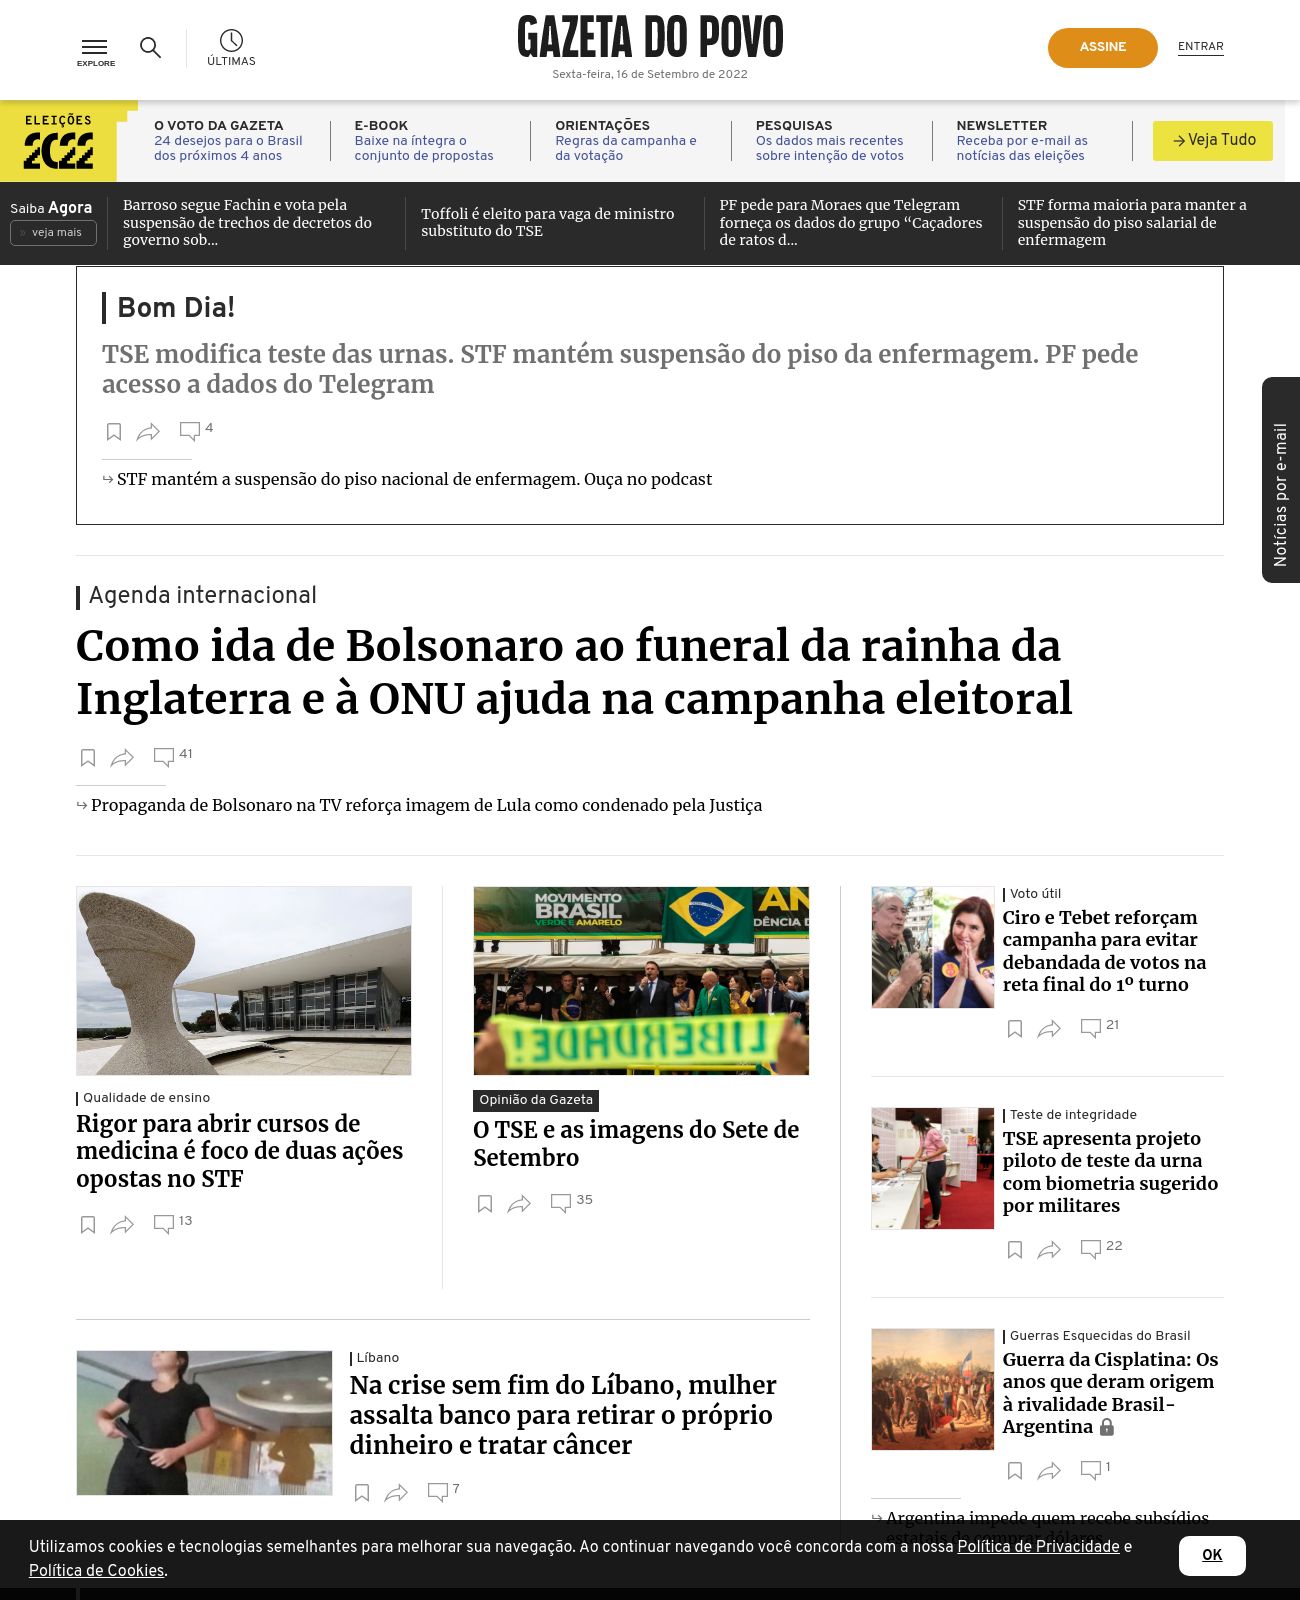 Gazeta do Povo at 2022-09-16 09:02:04-03:00 local time